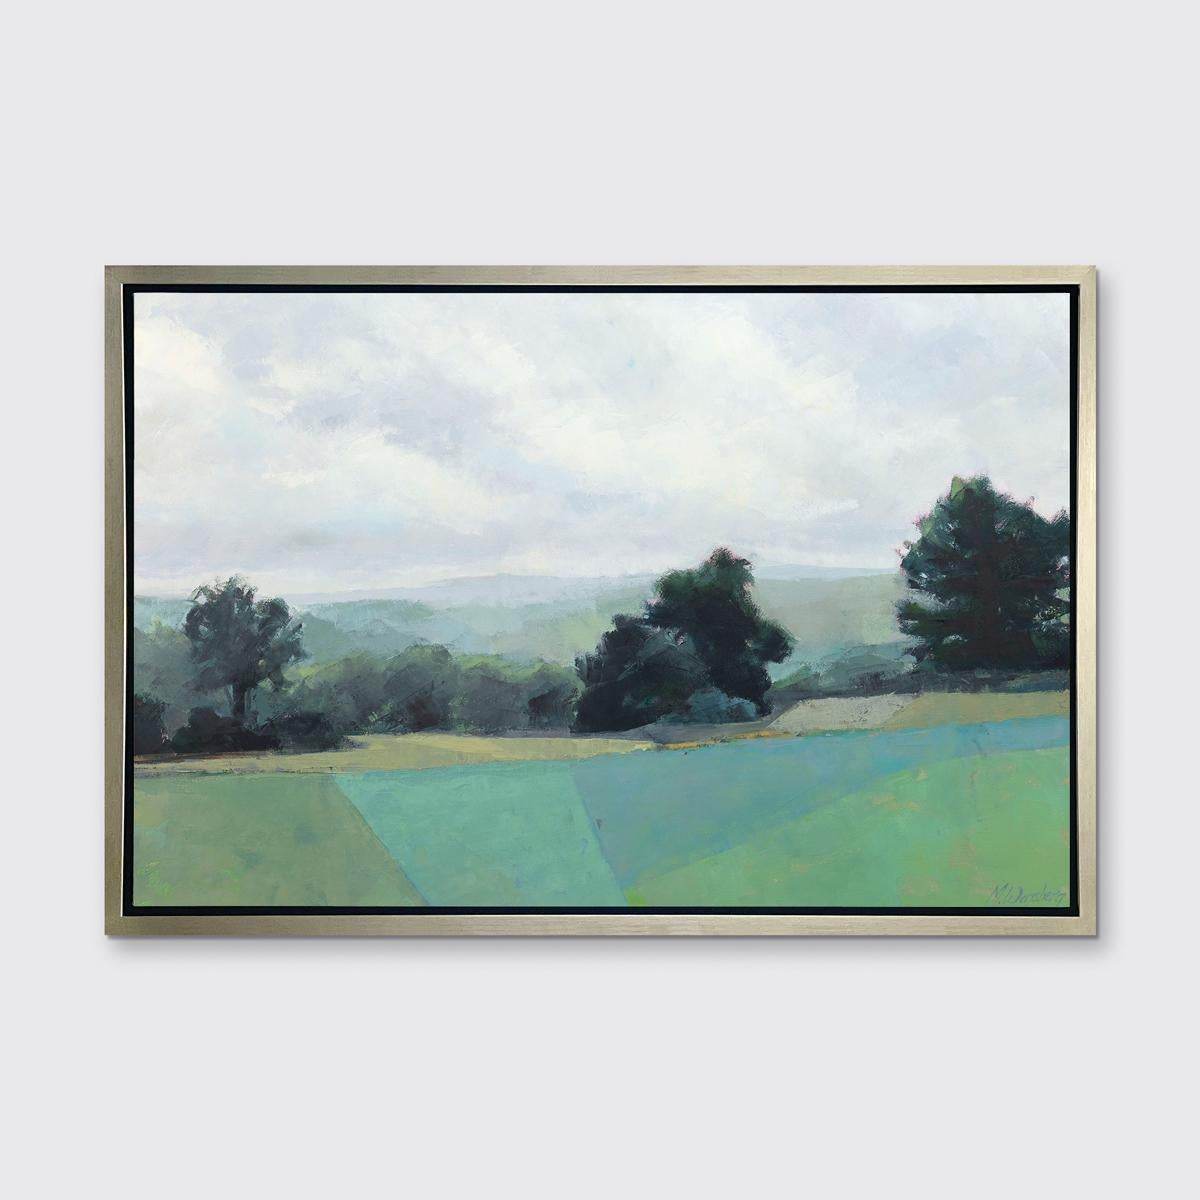 Molly Doe Wensberg Landscape Print - "Green Surrender" Framed Limited Edition Print, 24" x 36"